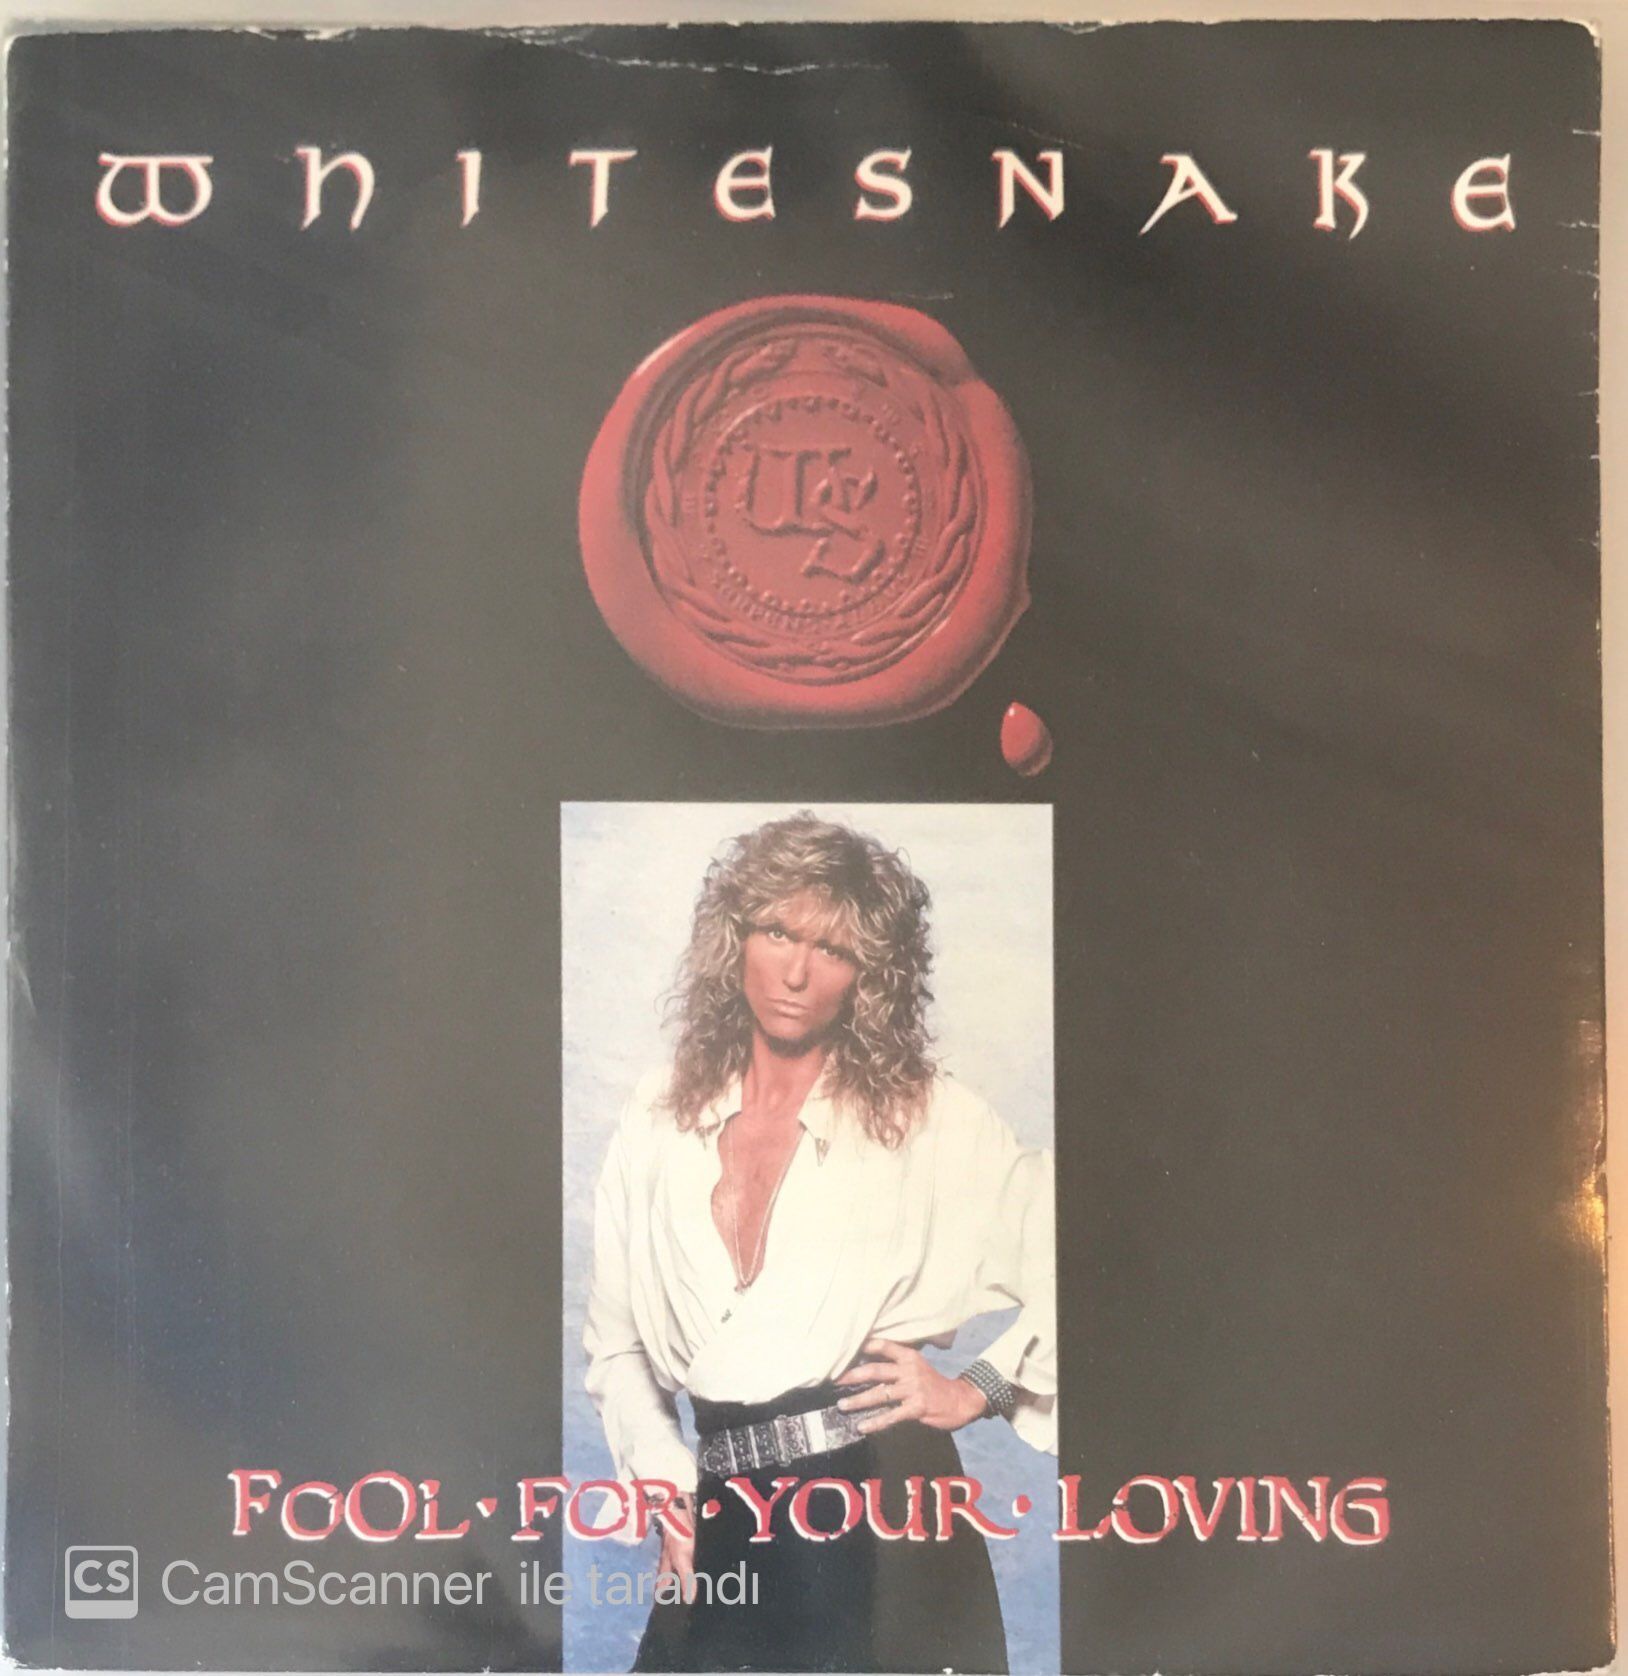 Whitesnake - Fool For Your Loving 45lik